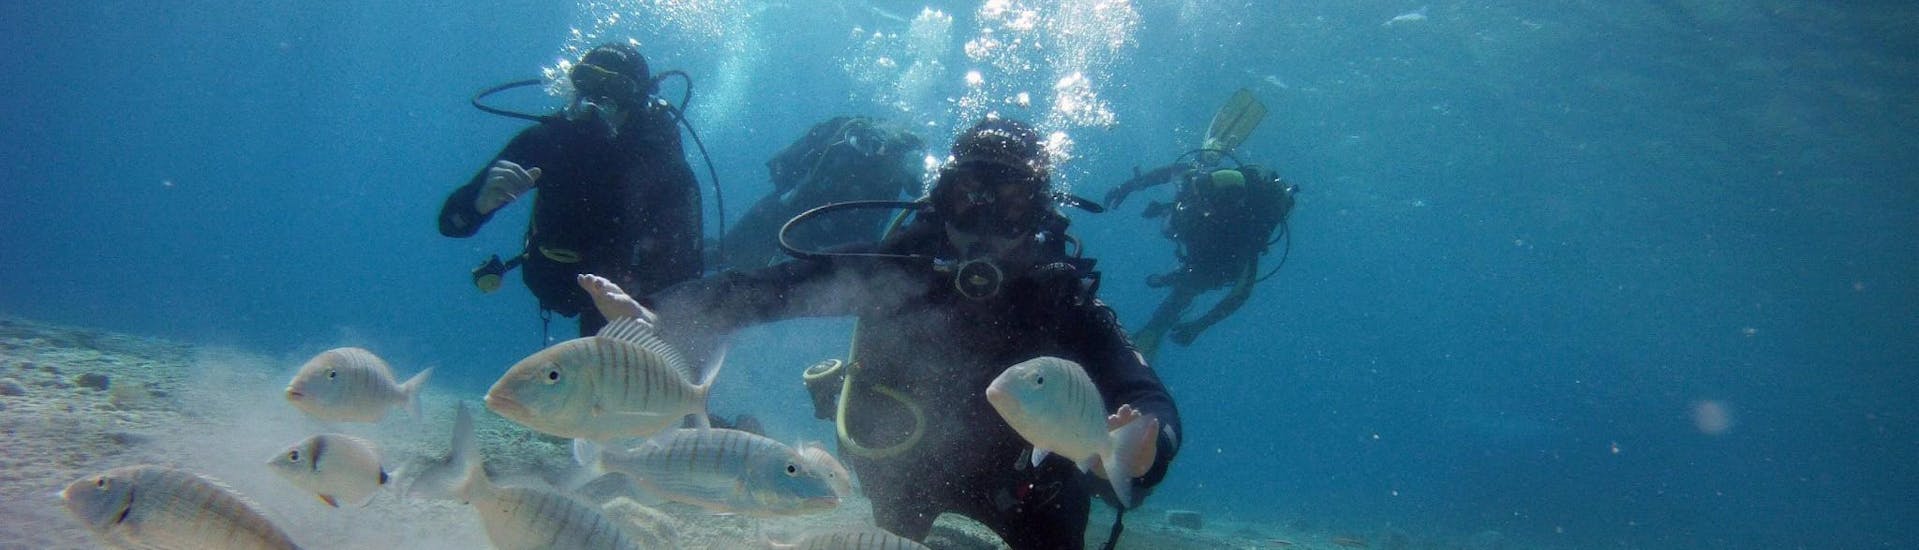 Un group d'amis nage avec les poissons lors de leur baptême de plongée à Split grâce au Blu diving center.